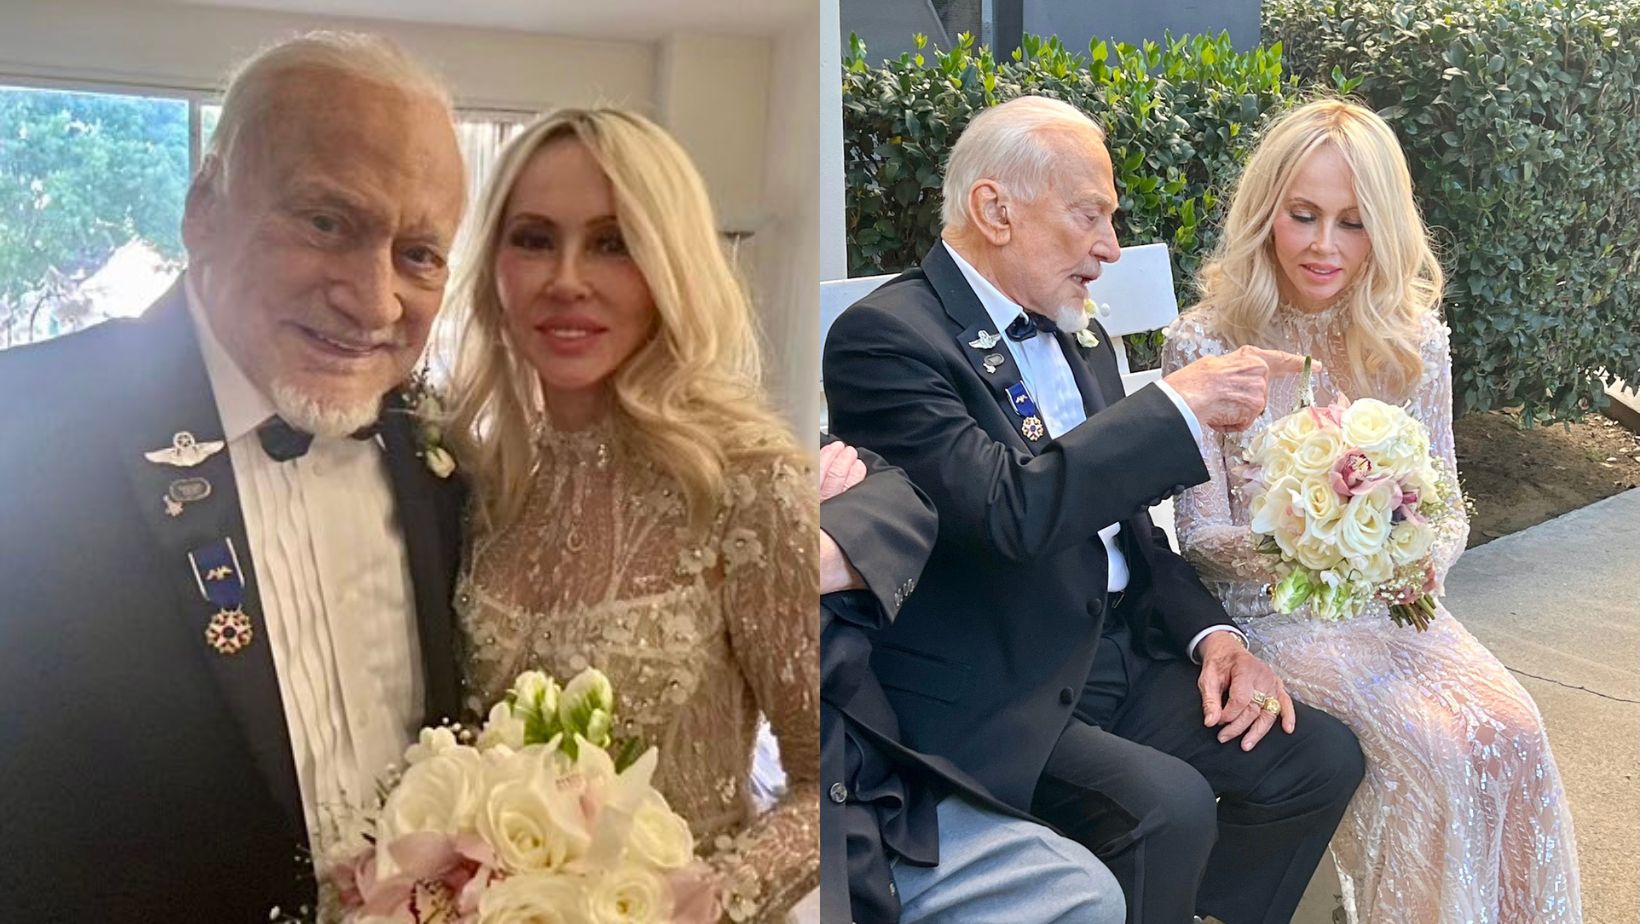 El astronauta Buzz Aldrin se casó nuevamente a sus 93 años